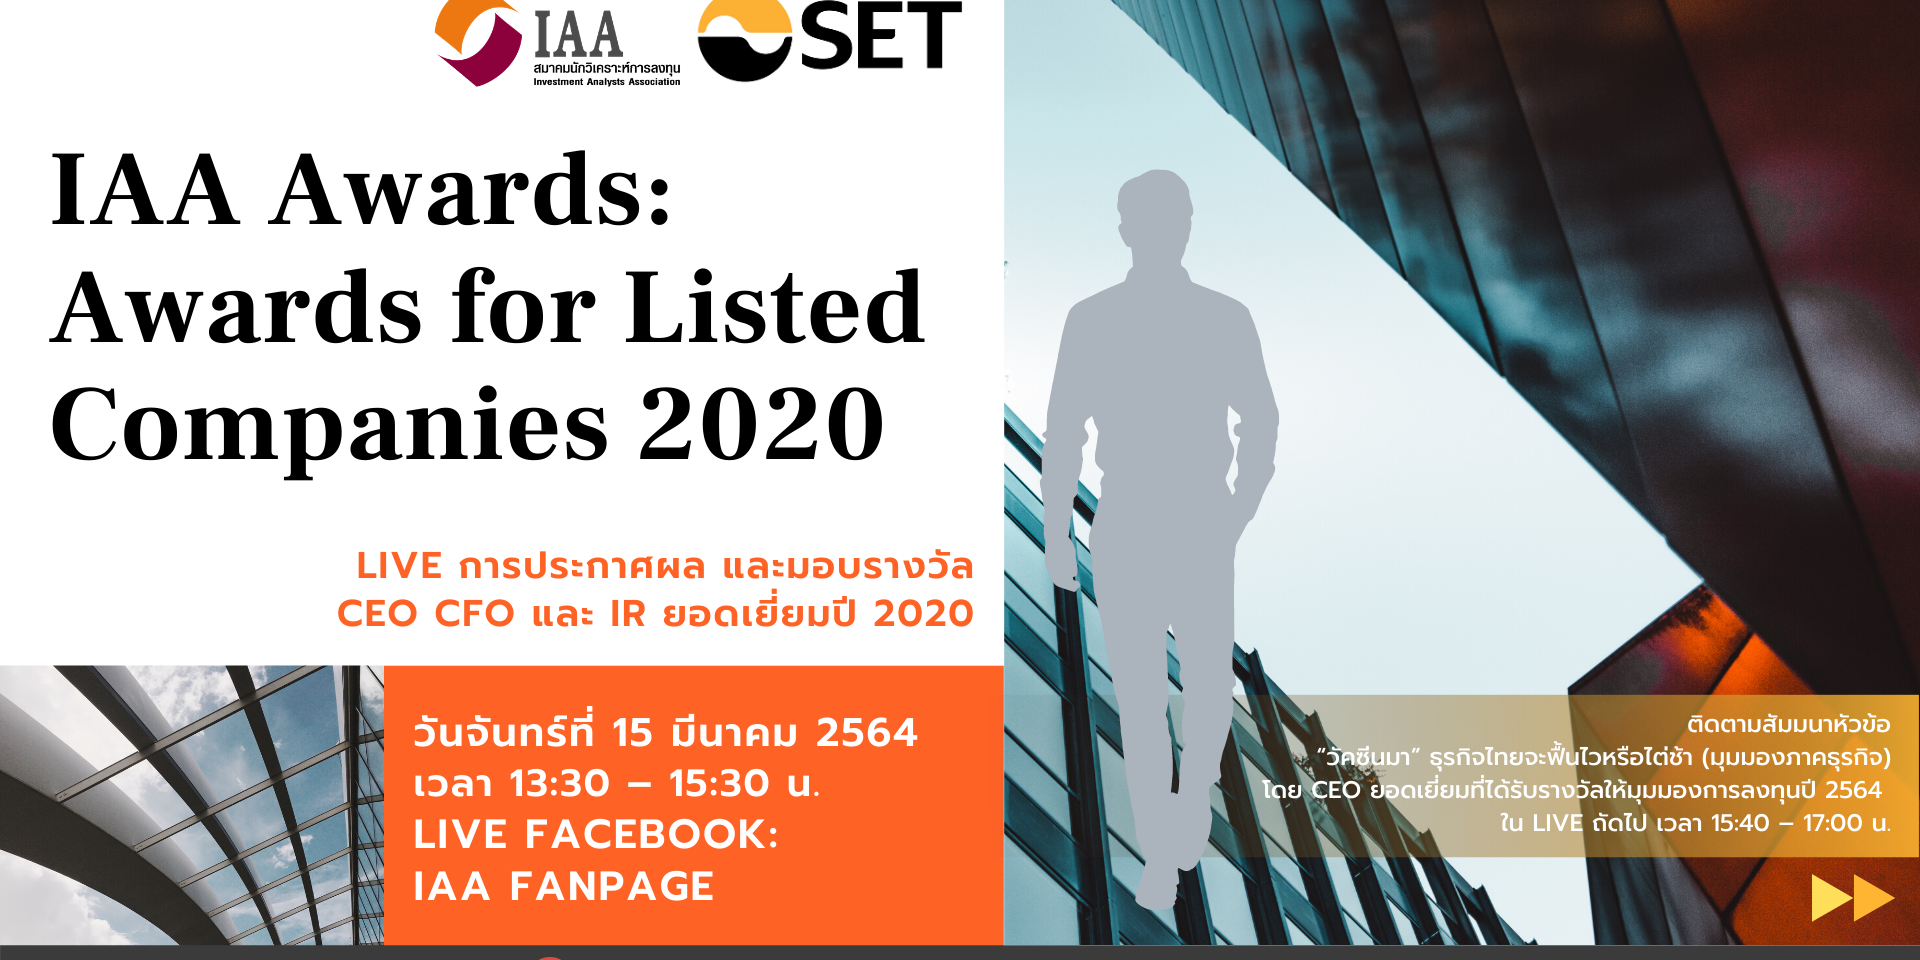 IAA Awards for Listed Companies 2020 สมาคมนักวิเคราะห์การลงทุน